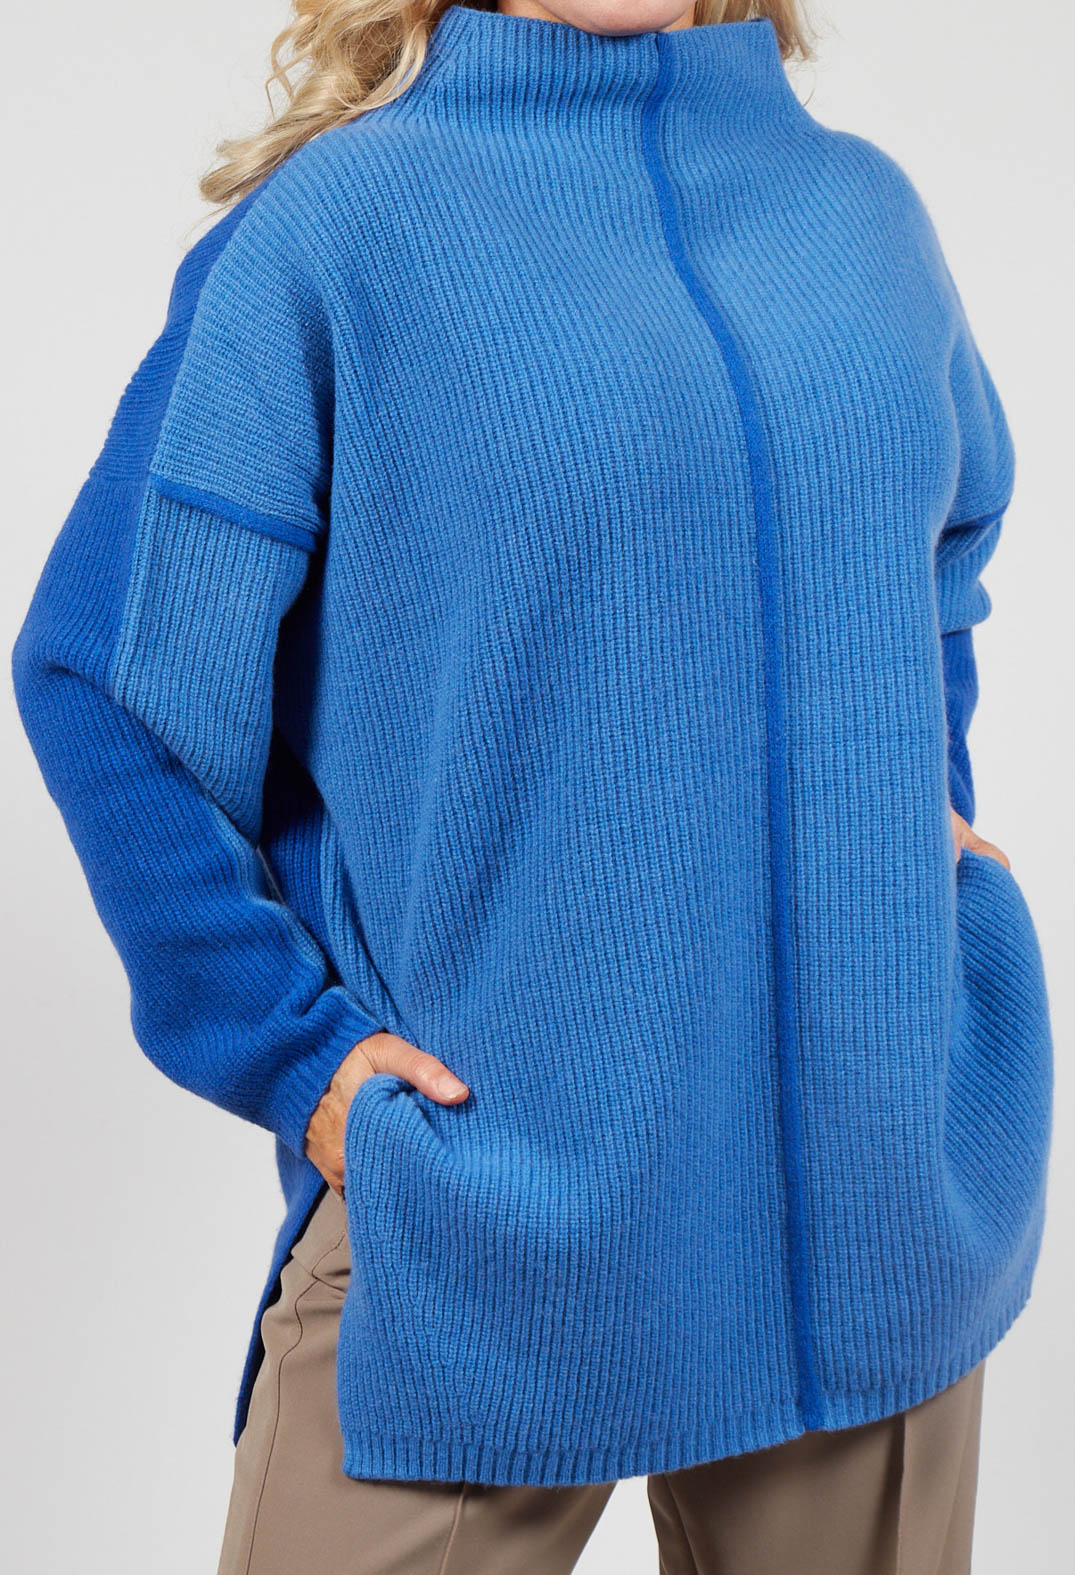 ladies Topaz blue jumper with side split detailing